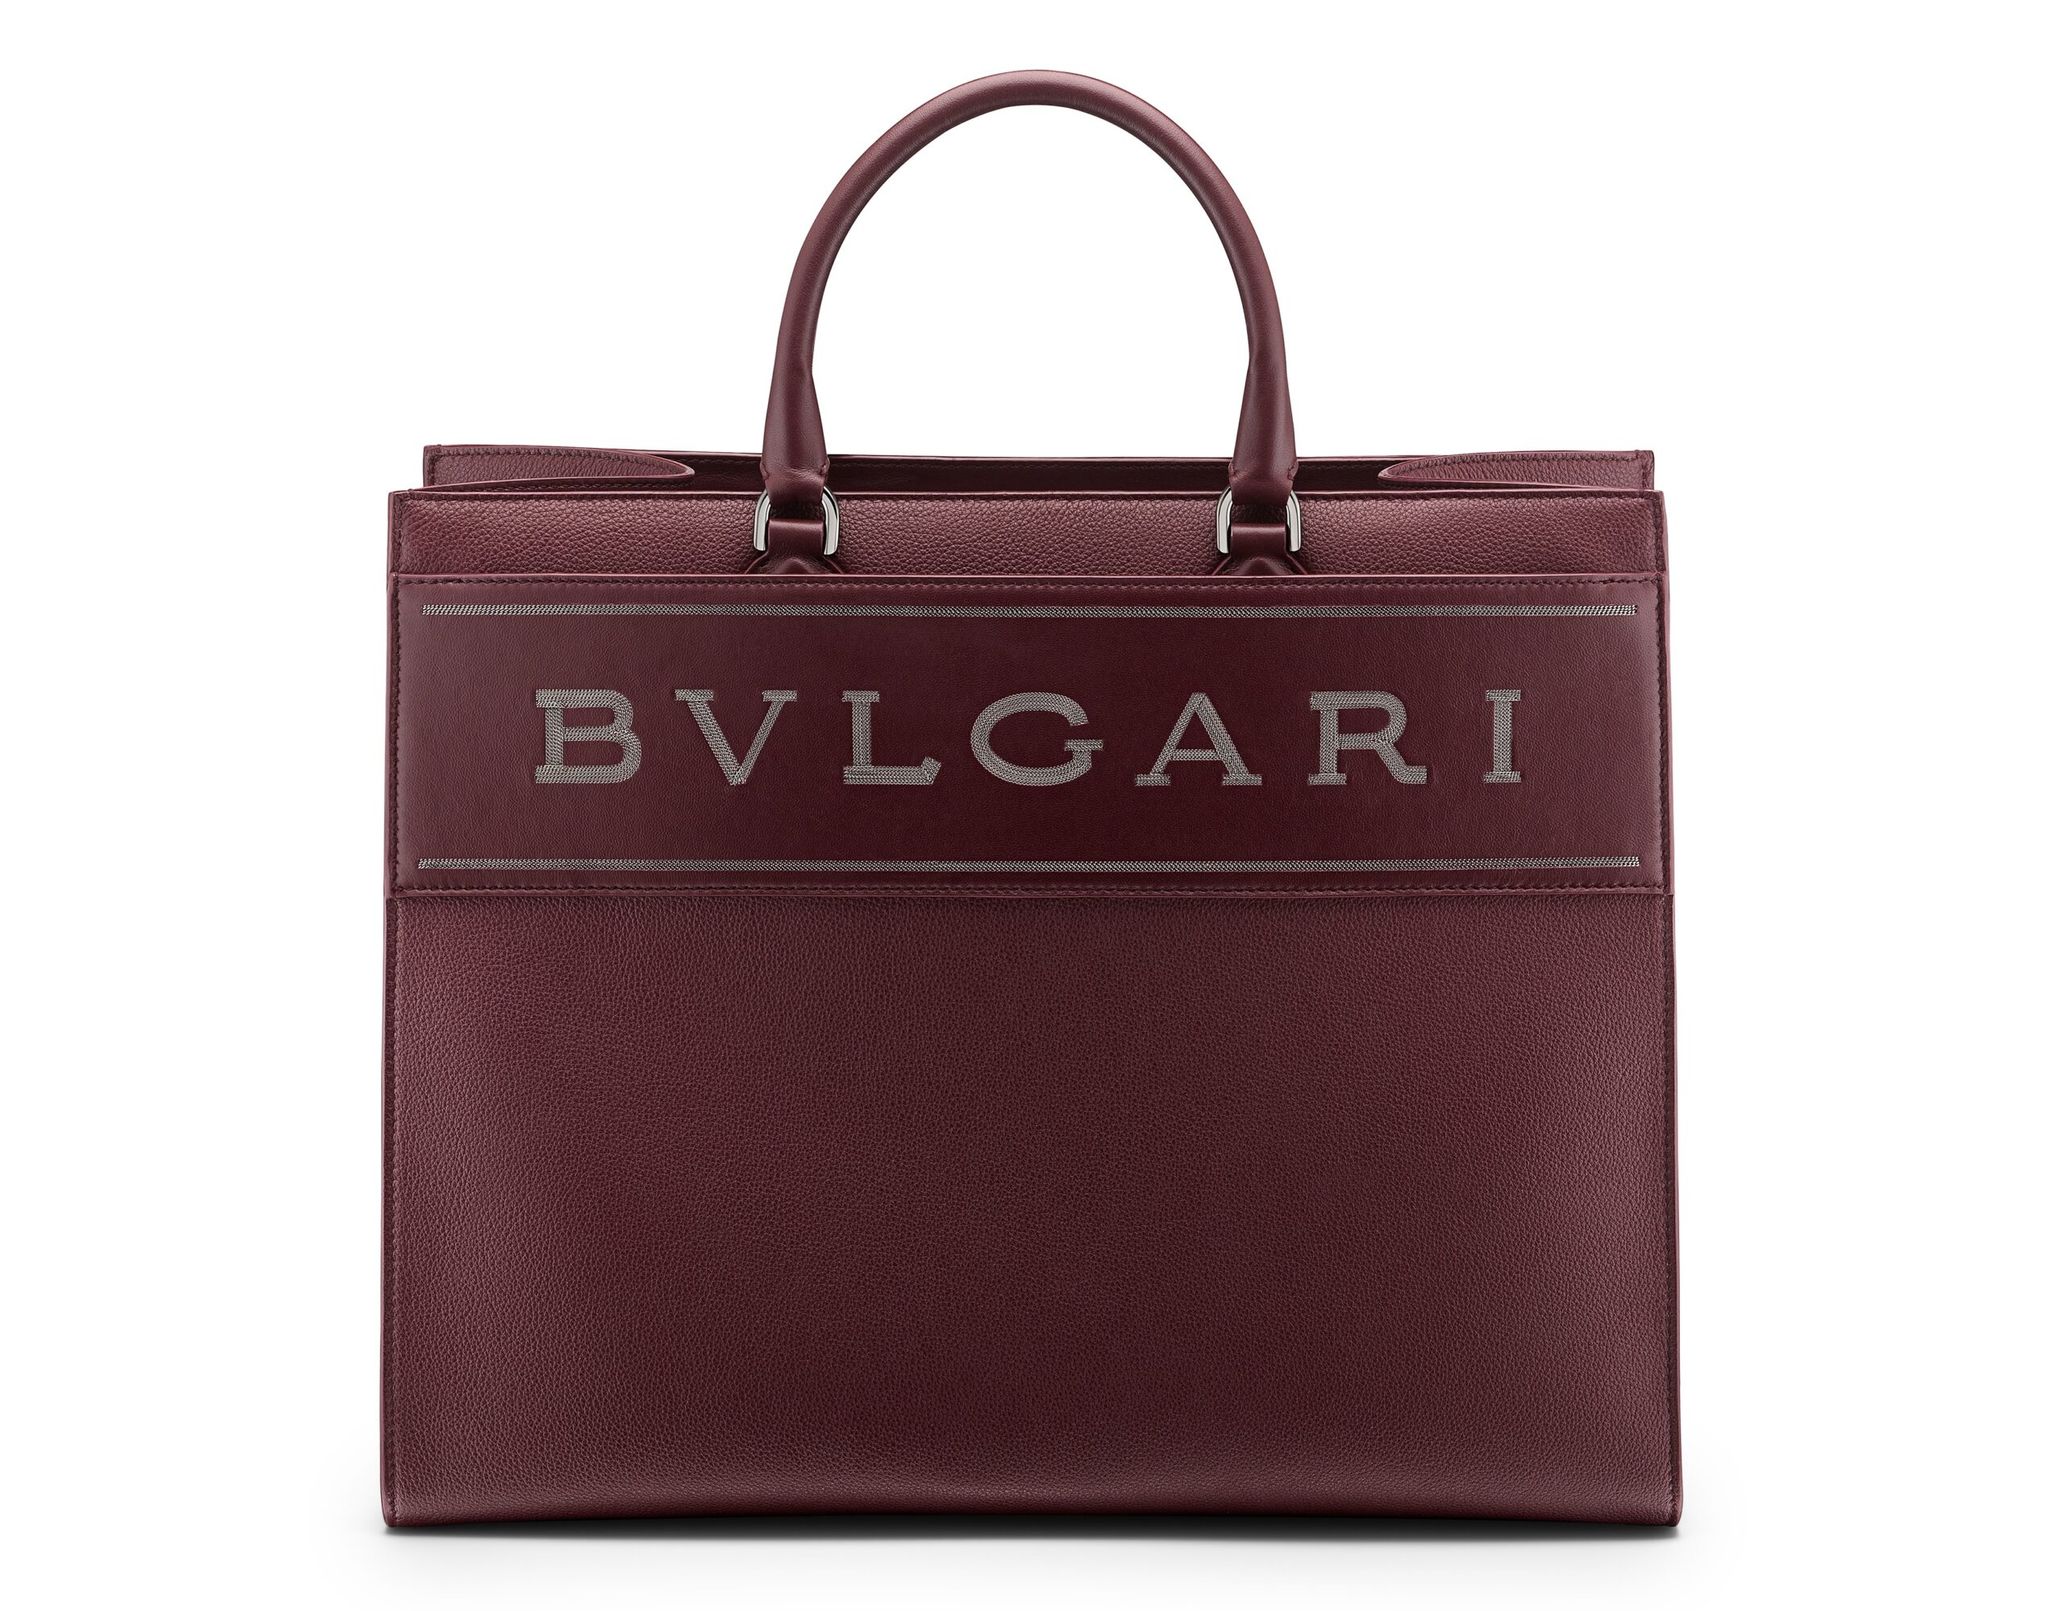 ブルガリ」からチェーン仕様の新たなブランドロゴが特徴のバッグが登場 